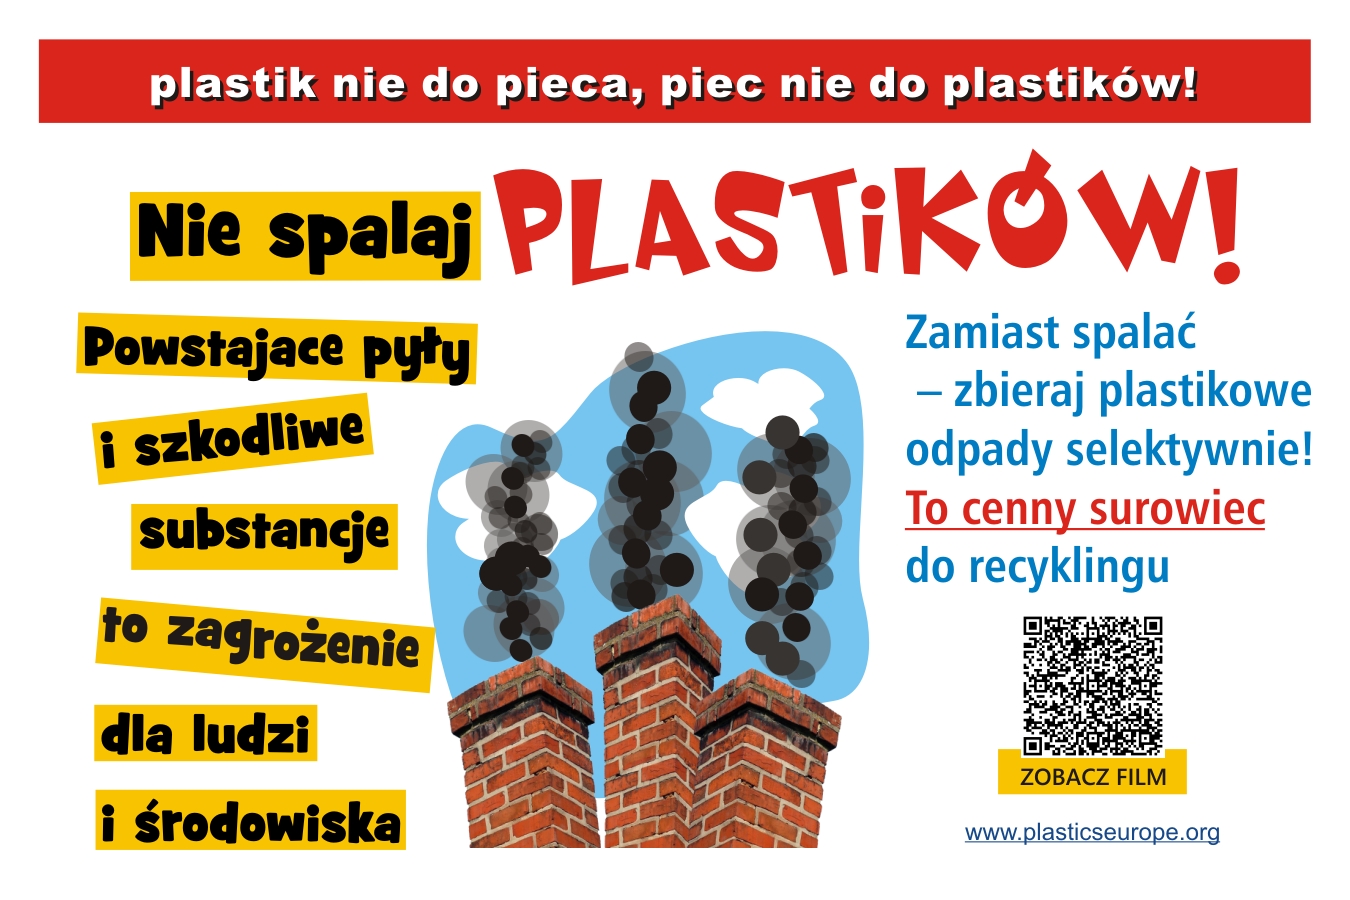 Plastik_nie_do_pieca_plakat_do_netu.jpg - 592.34 kb